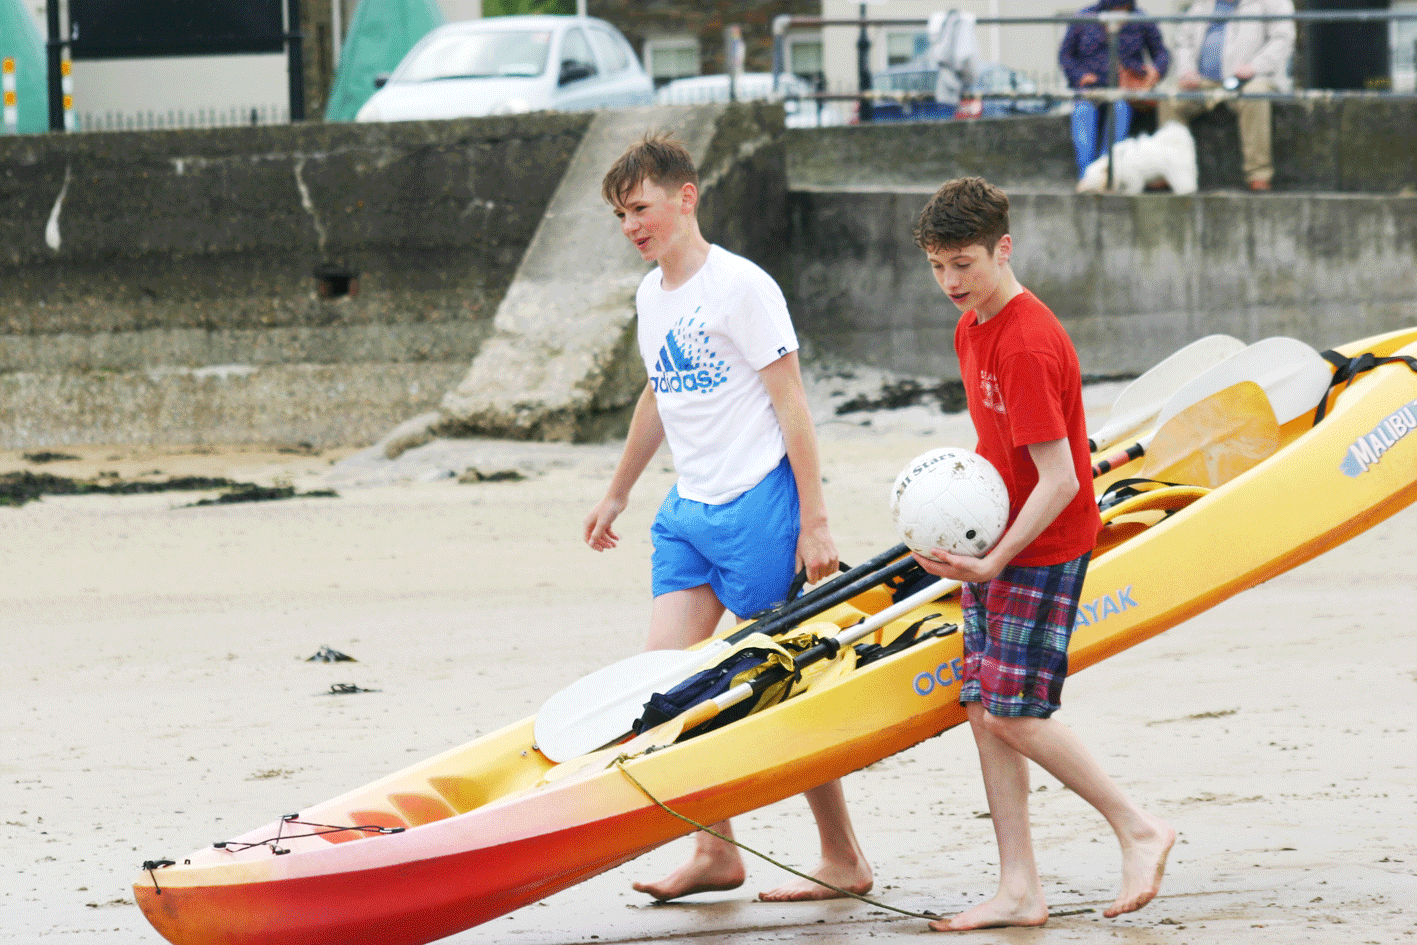 Kayaking ardmore ecole de mer 2016 students